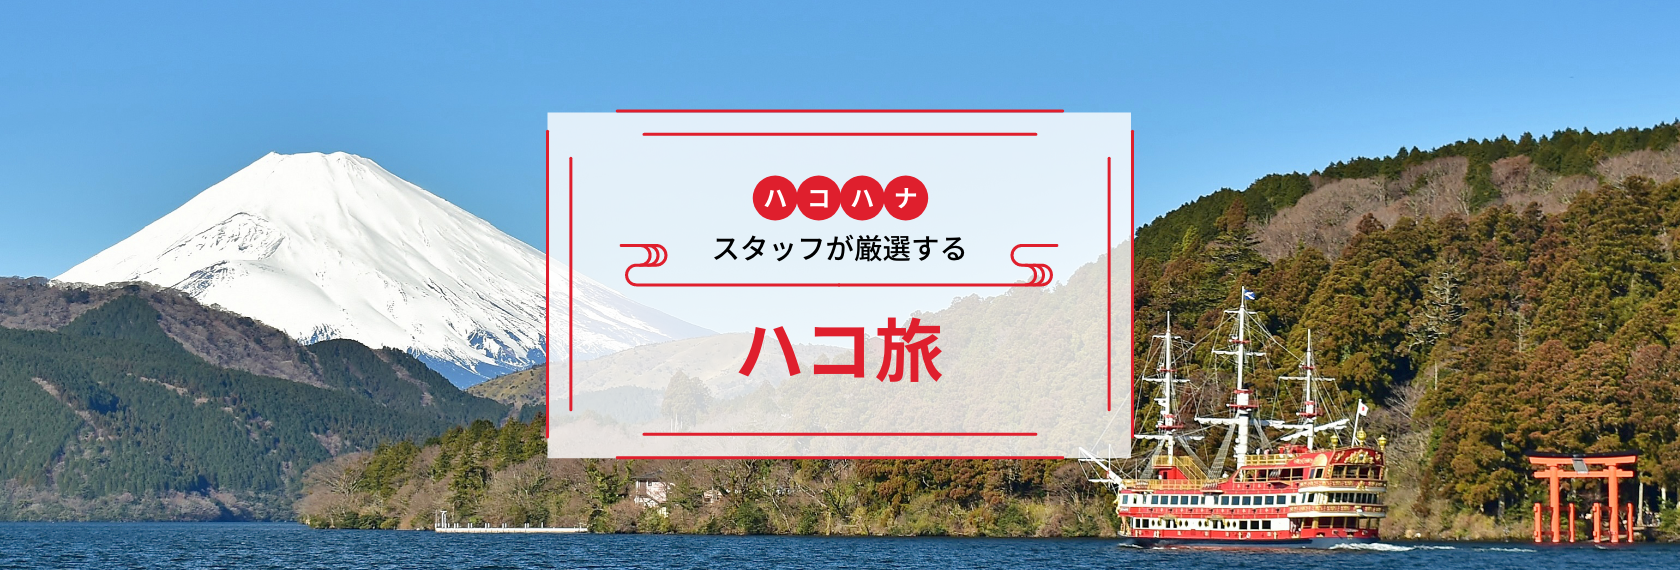 ハコハナスタッフが厳選する箱根観光ツアー